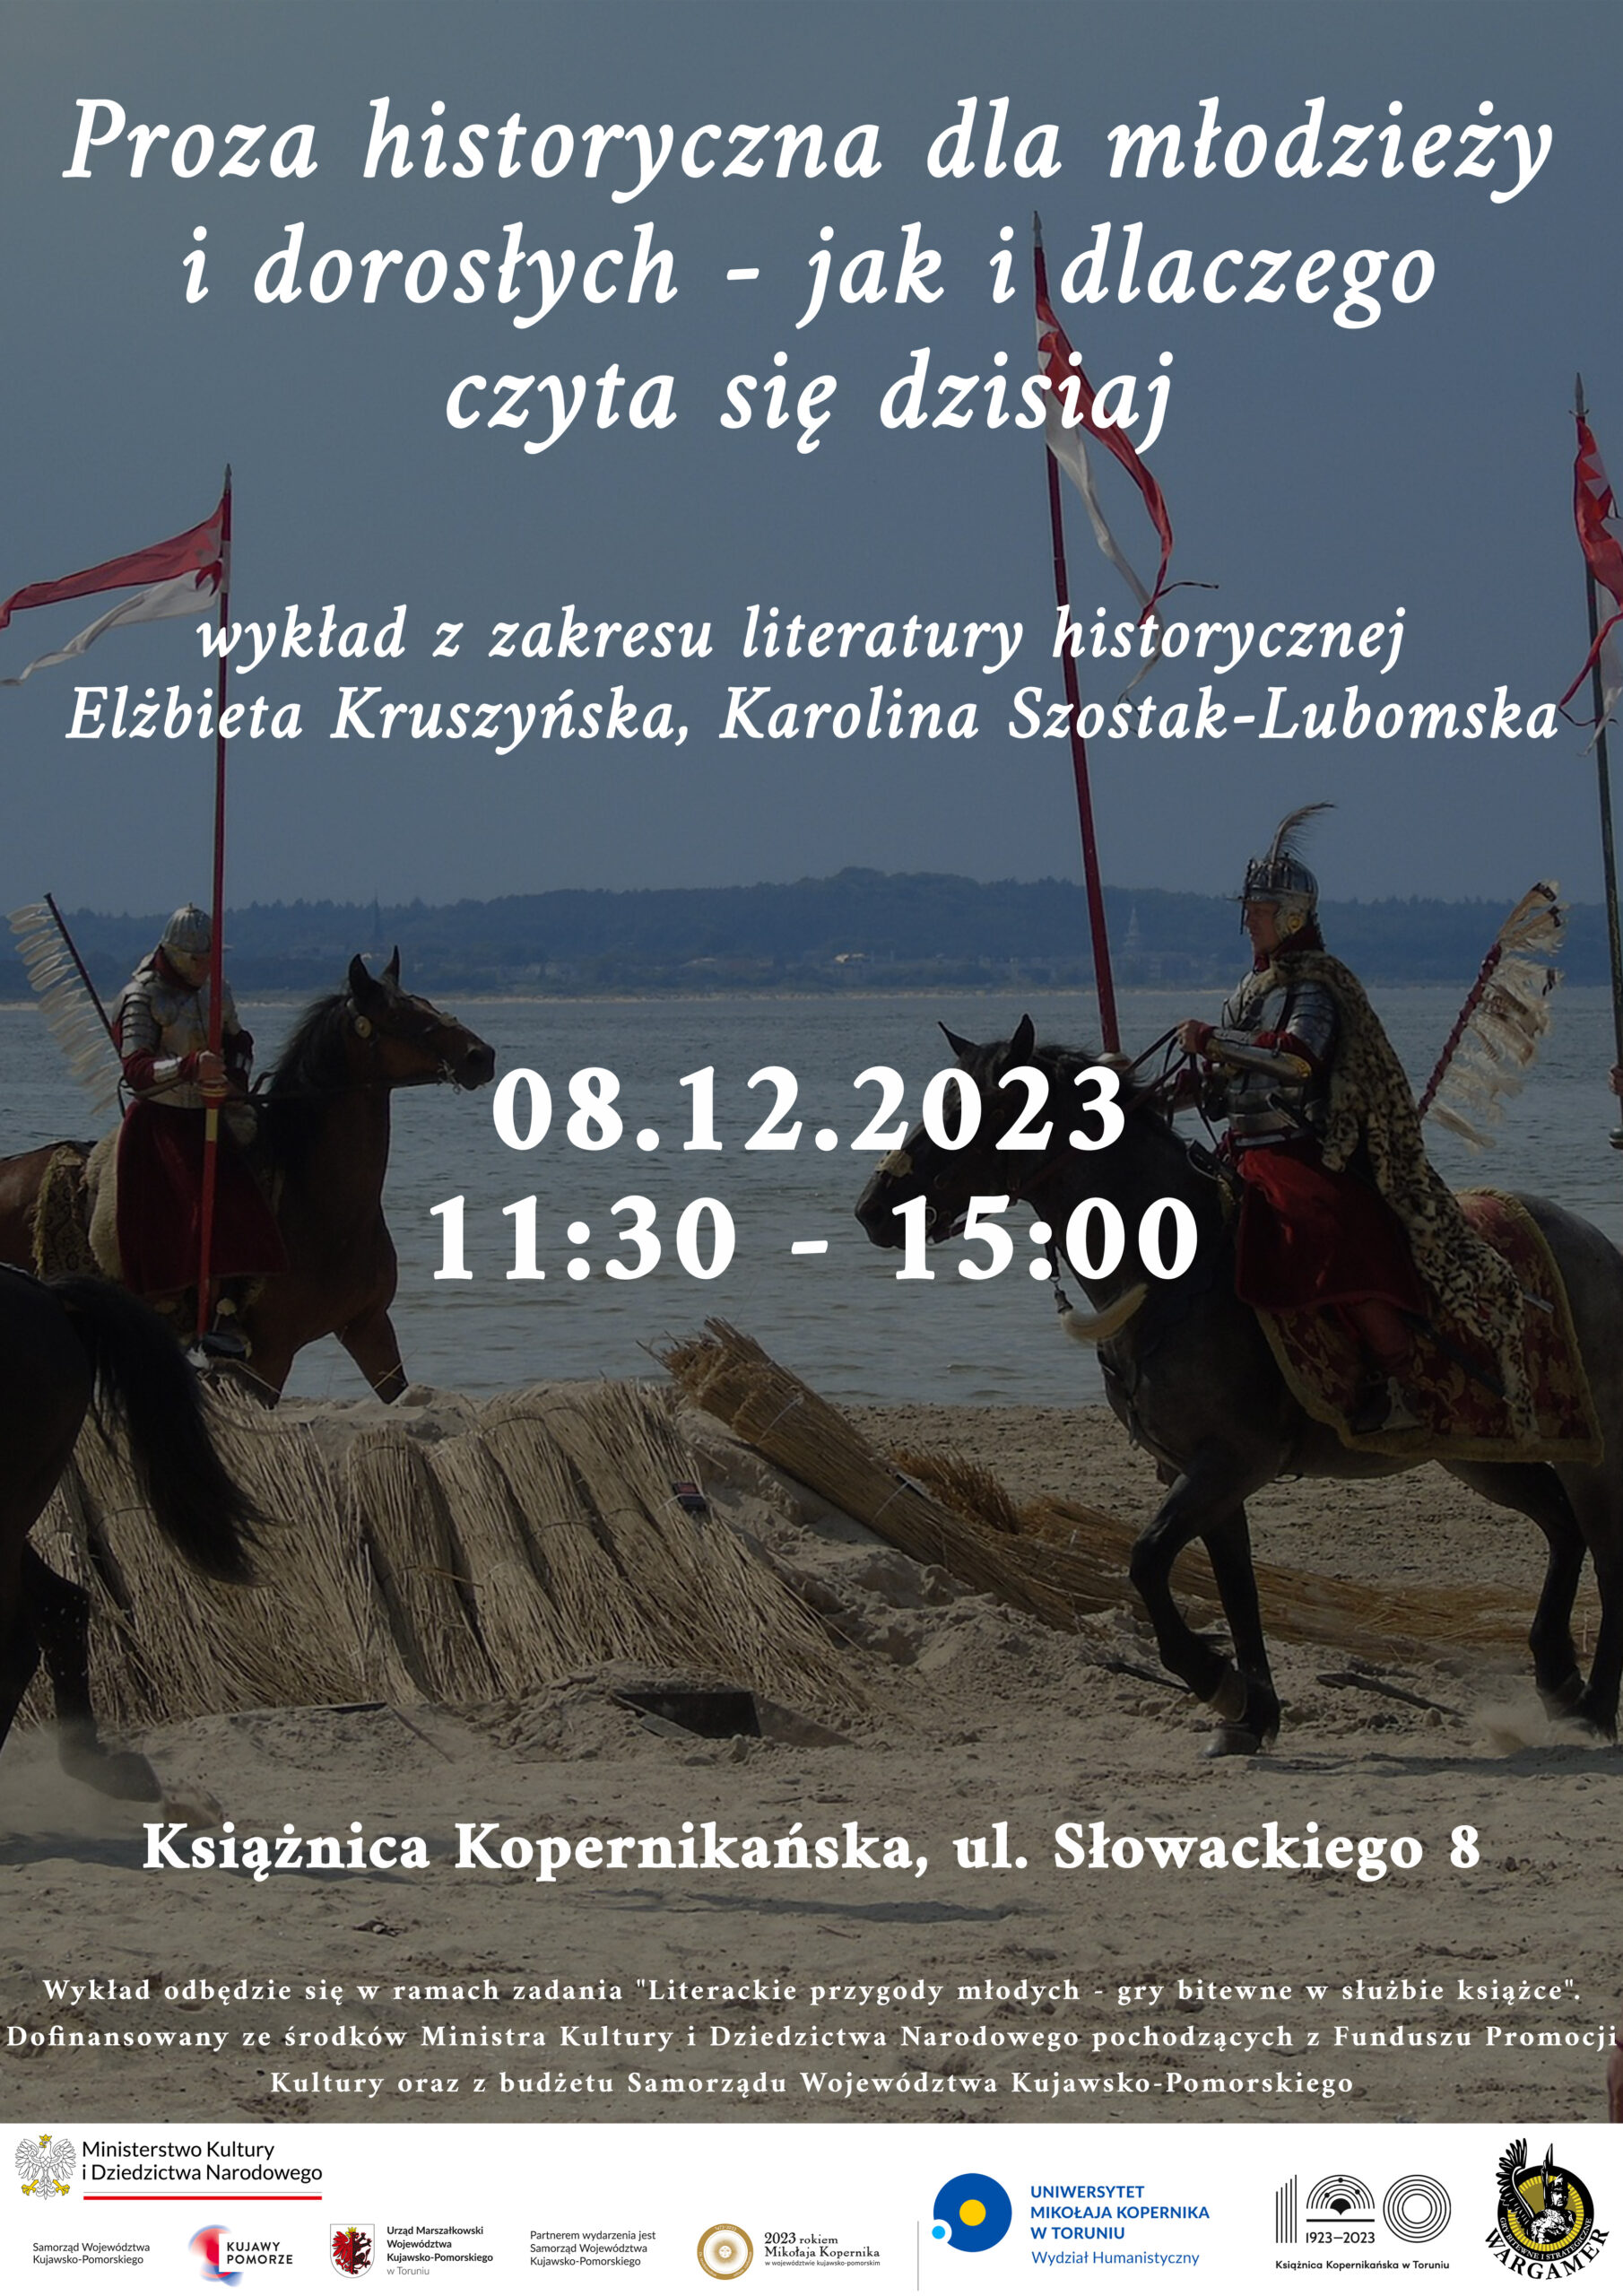 plakat wydarzenia z motywem rycerzy konnych z chorągwiami w polu i informacjami o spotkaniu